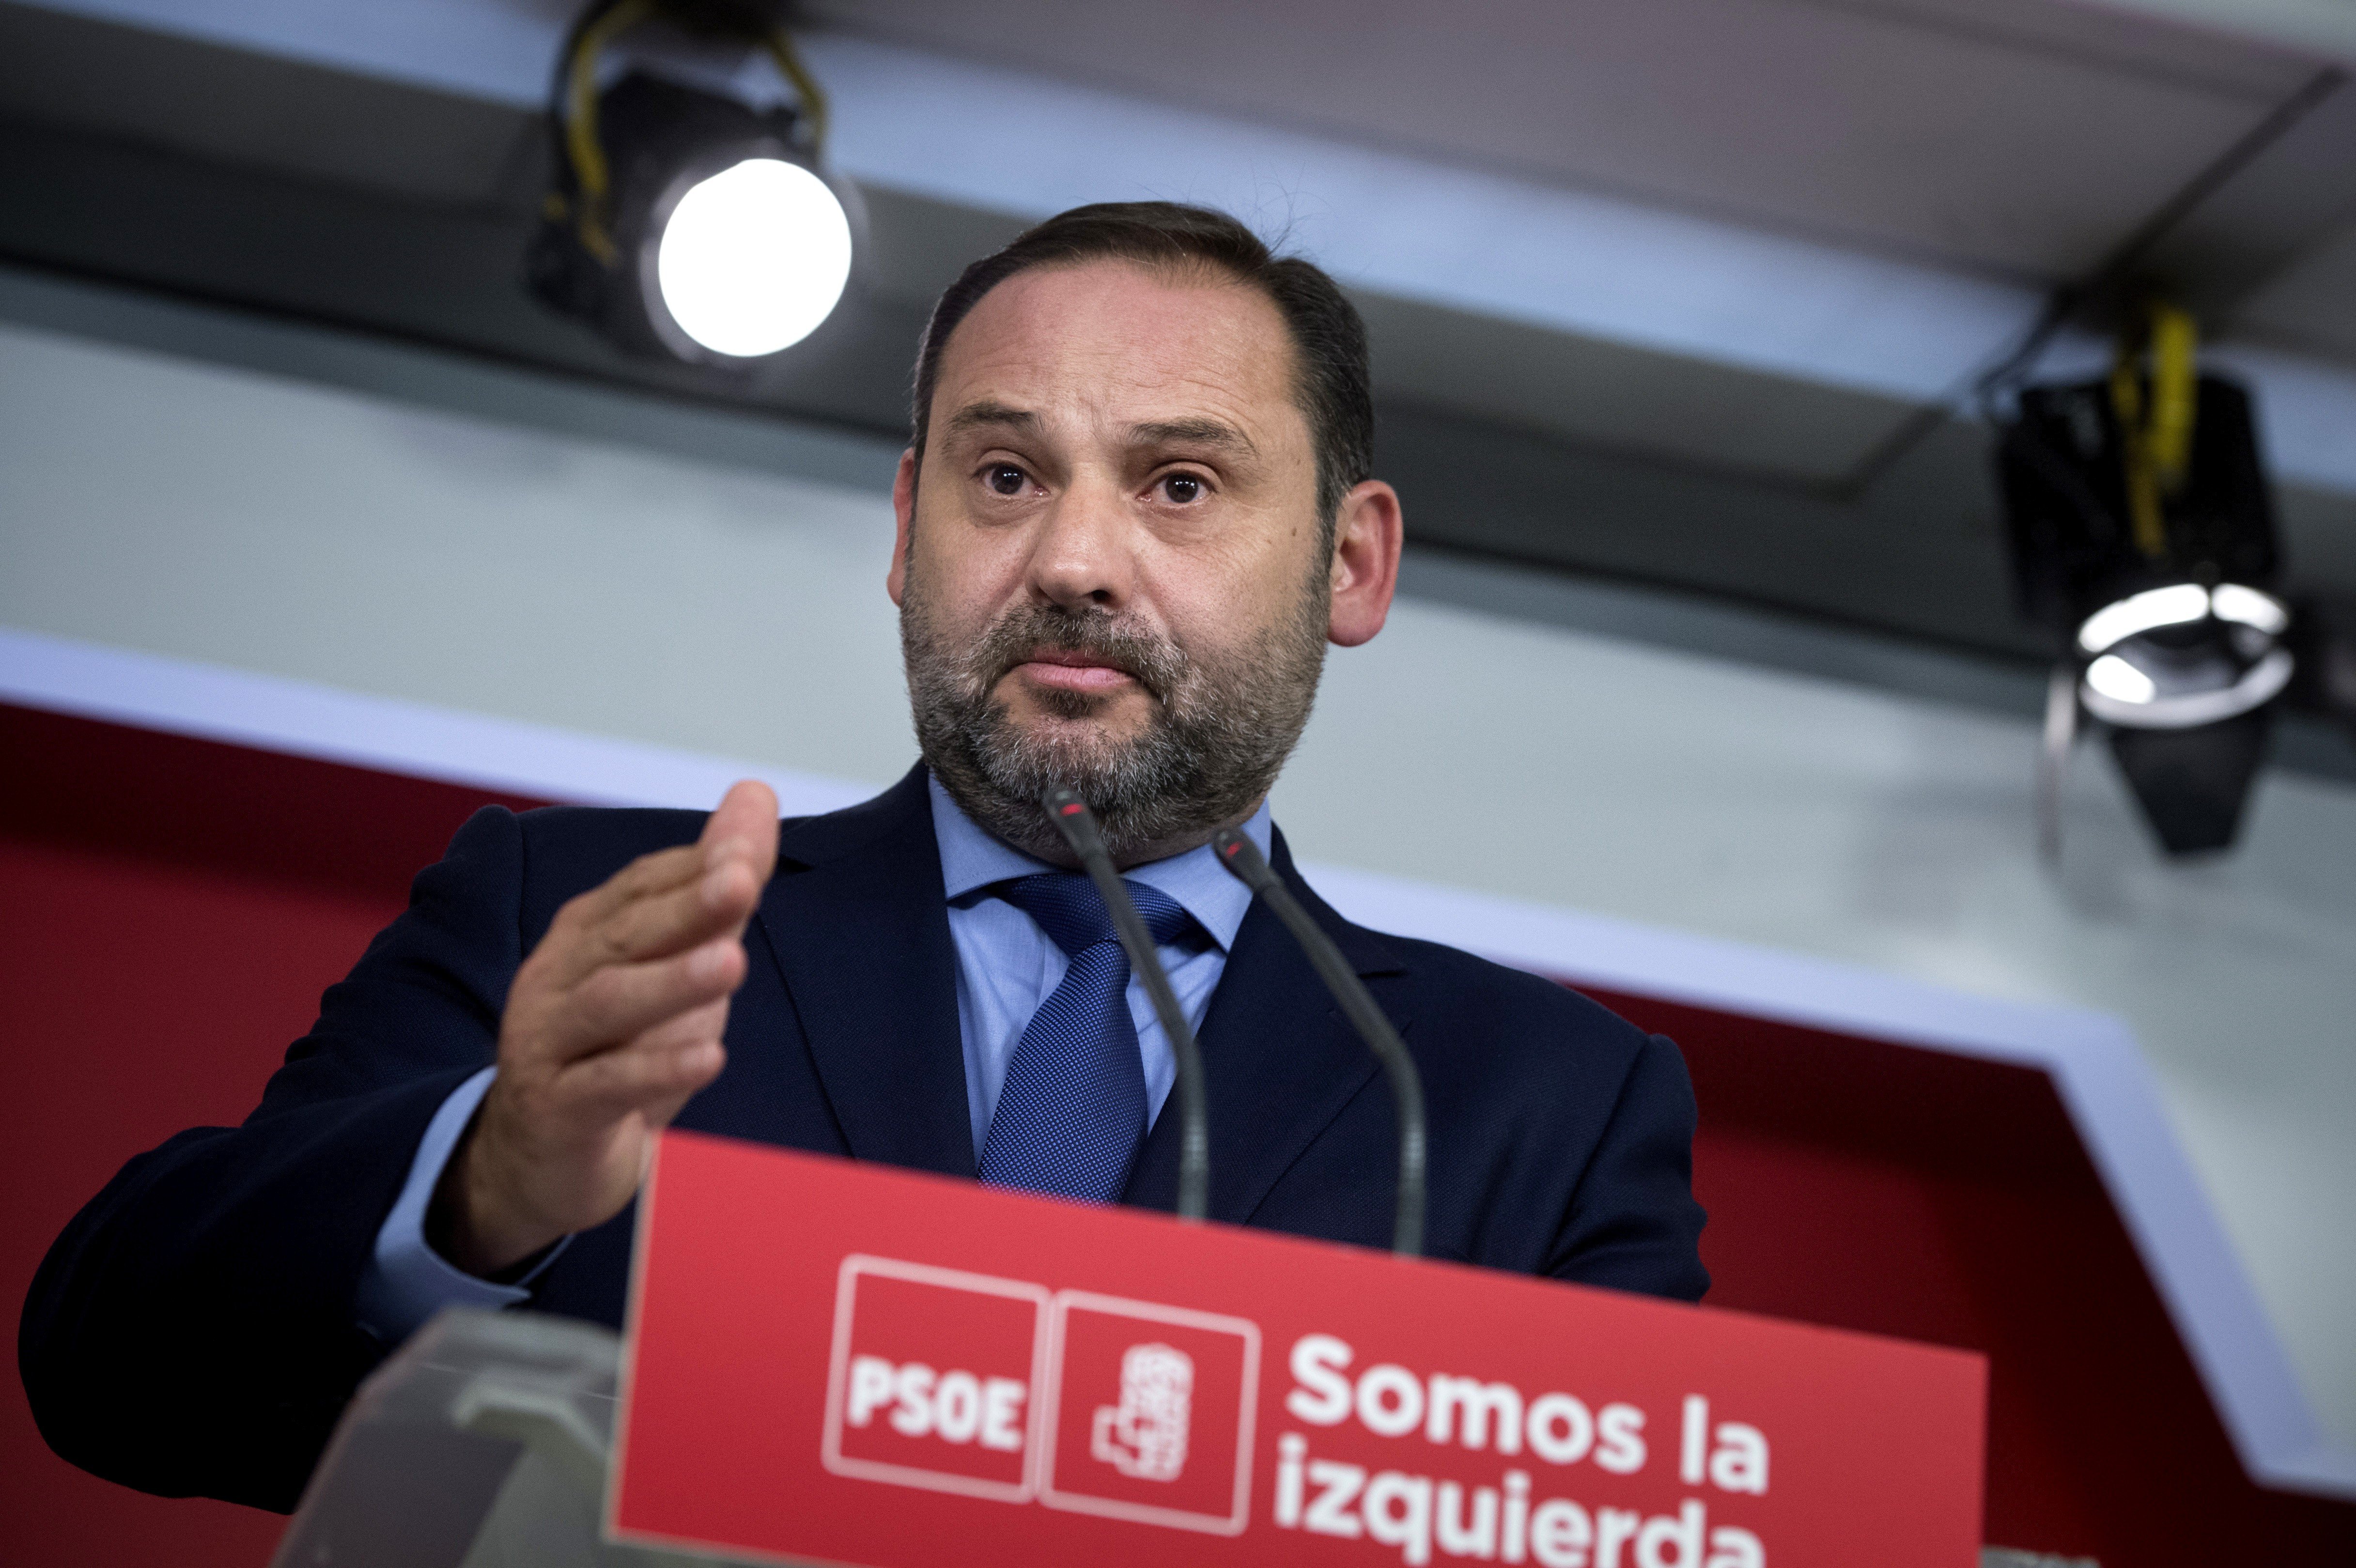 El PSOE diu que està "preocupat" perquè Rajoy sigui "superat" pel conflicte